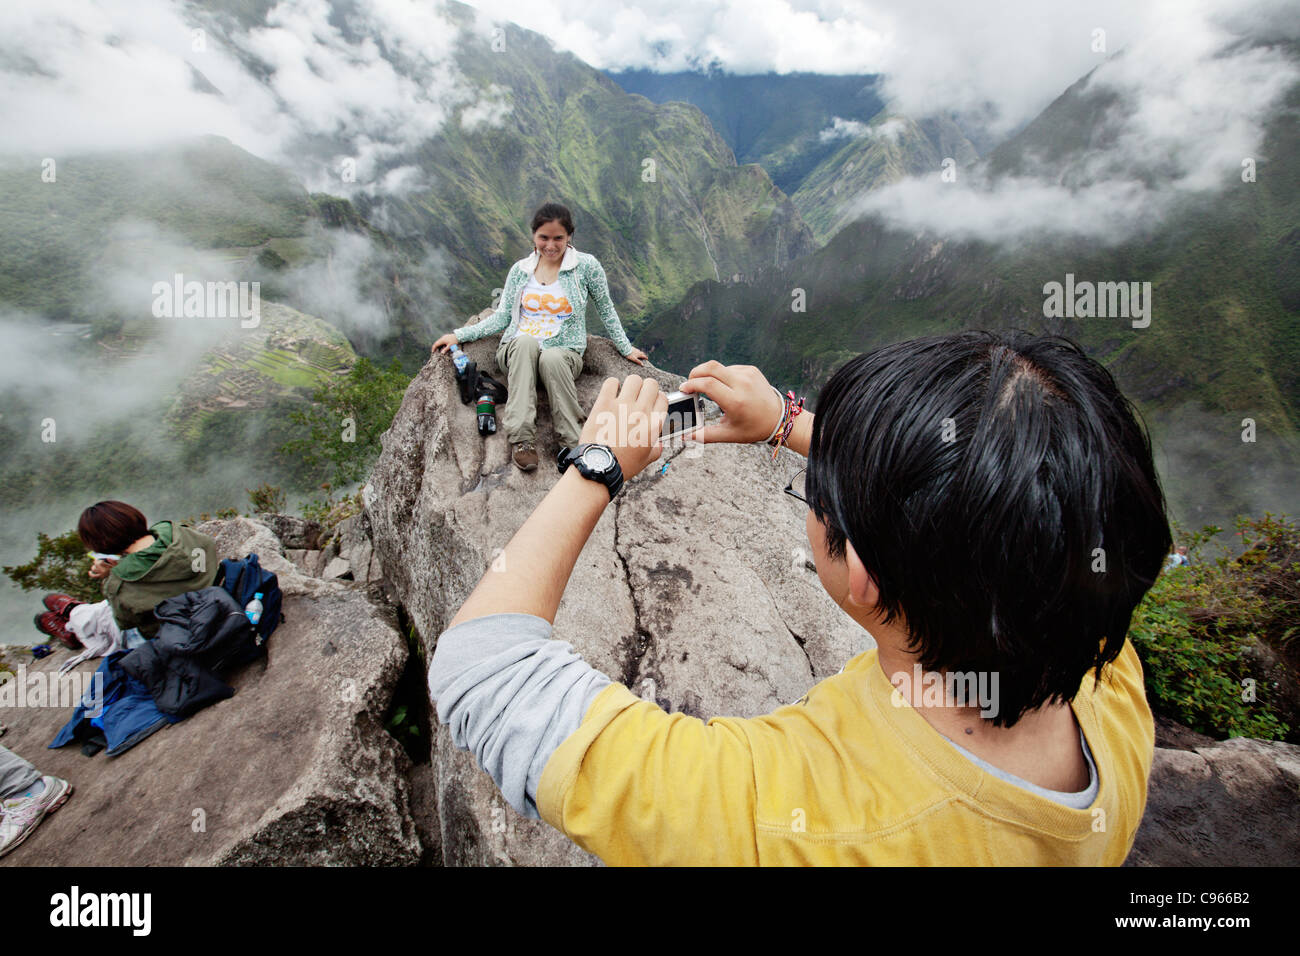 Les touristes de prendre des photos sur la montagne Wayna Picchu. Dans l'arrière-plan le Machu Picchu, site touristique le plus connu dans les montagnes des Andes. Banque D'Images